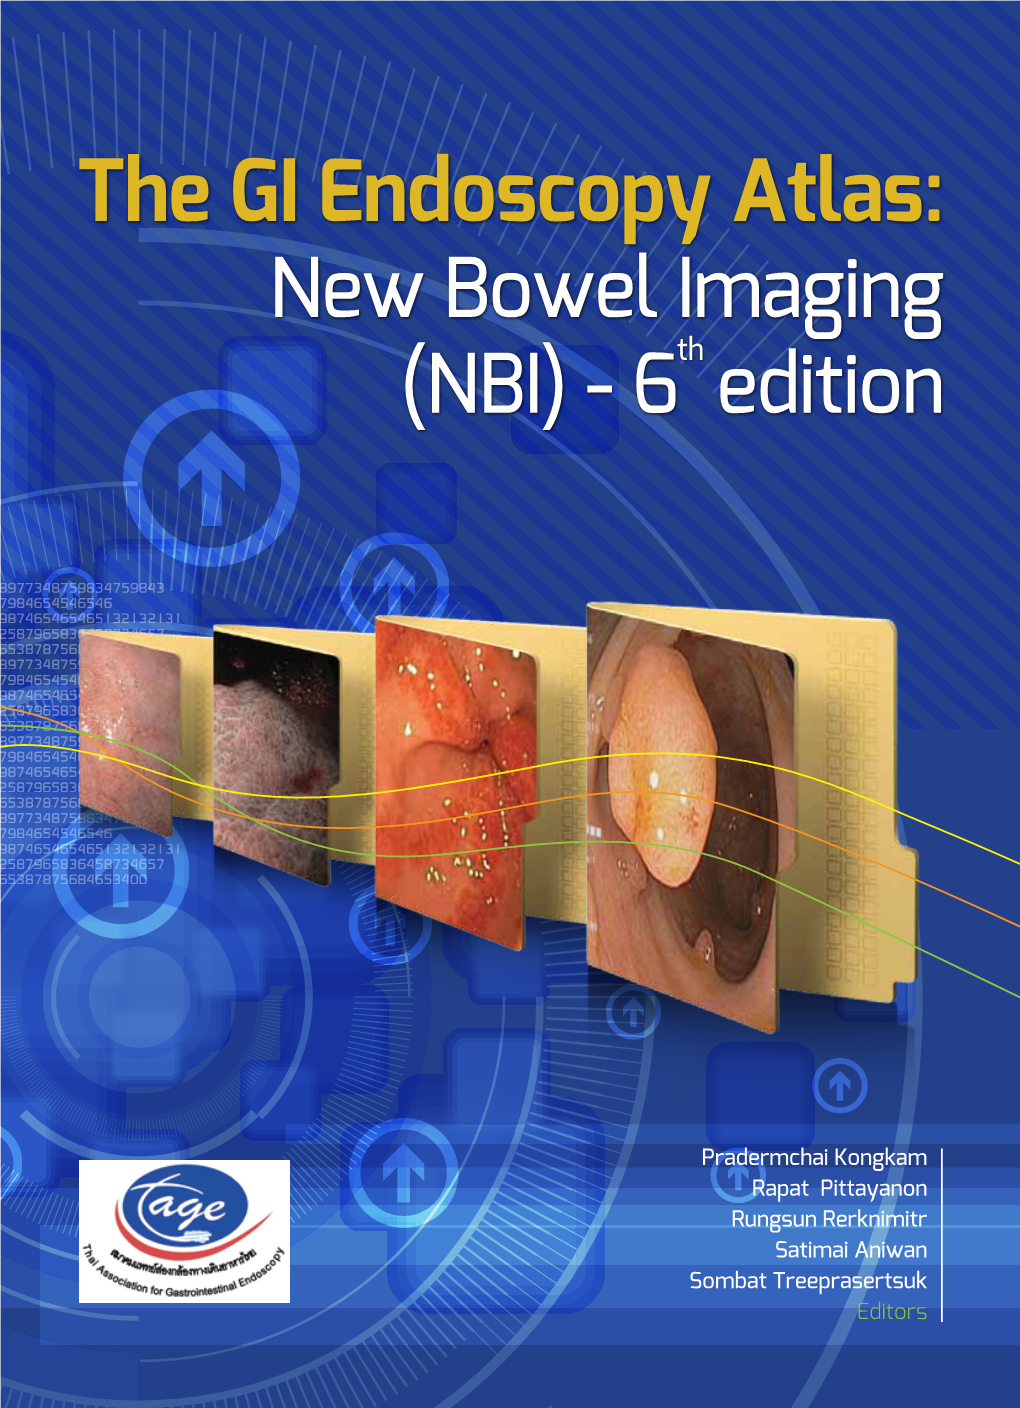 The GI Endoscopy Atlas: New Bowel Imageing (NBI)-6Th Edition the GI Endoscopy Atlas: New Bowel Imageing (NBI)-6Th Edition